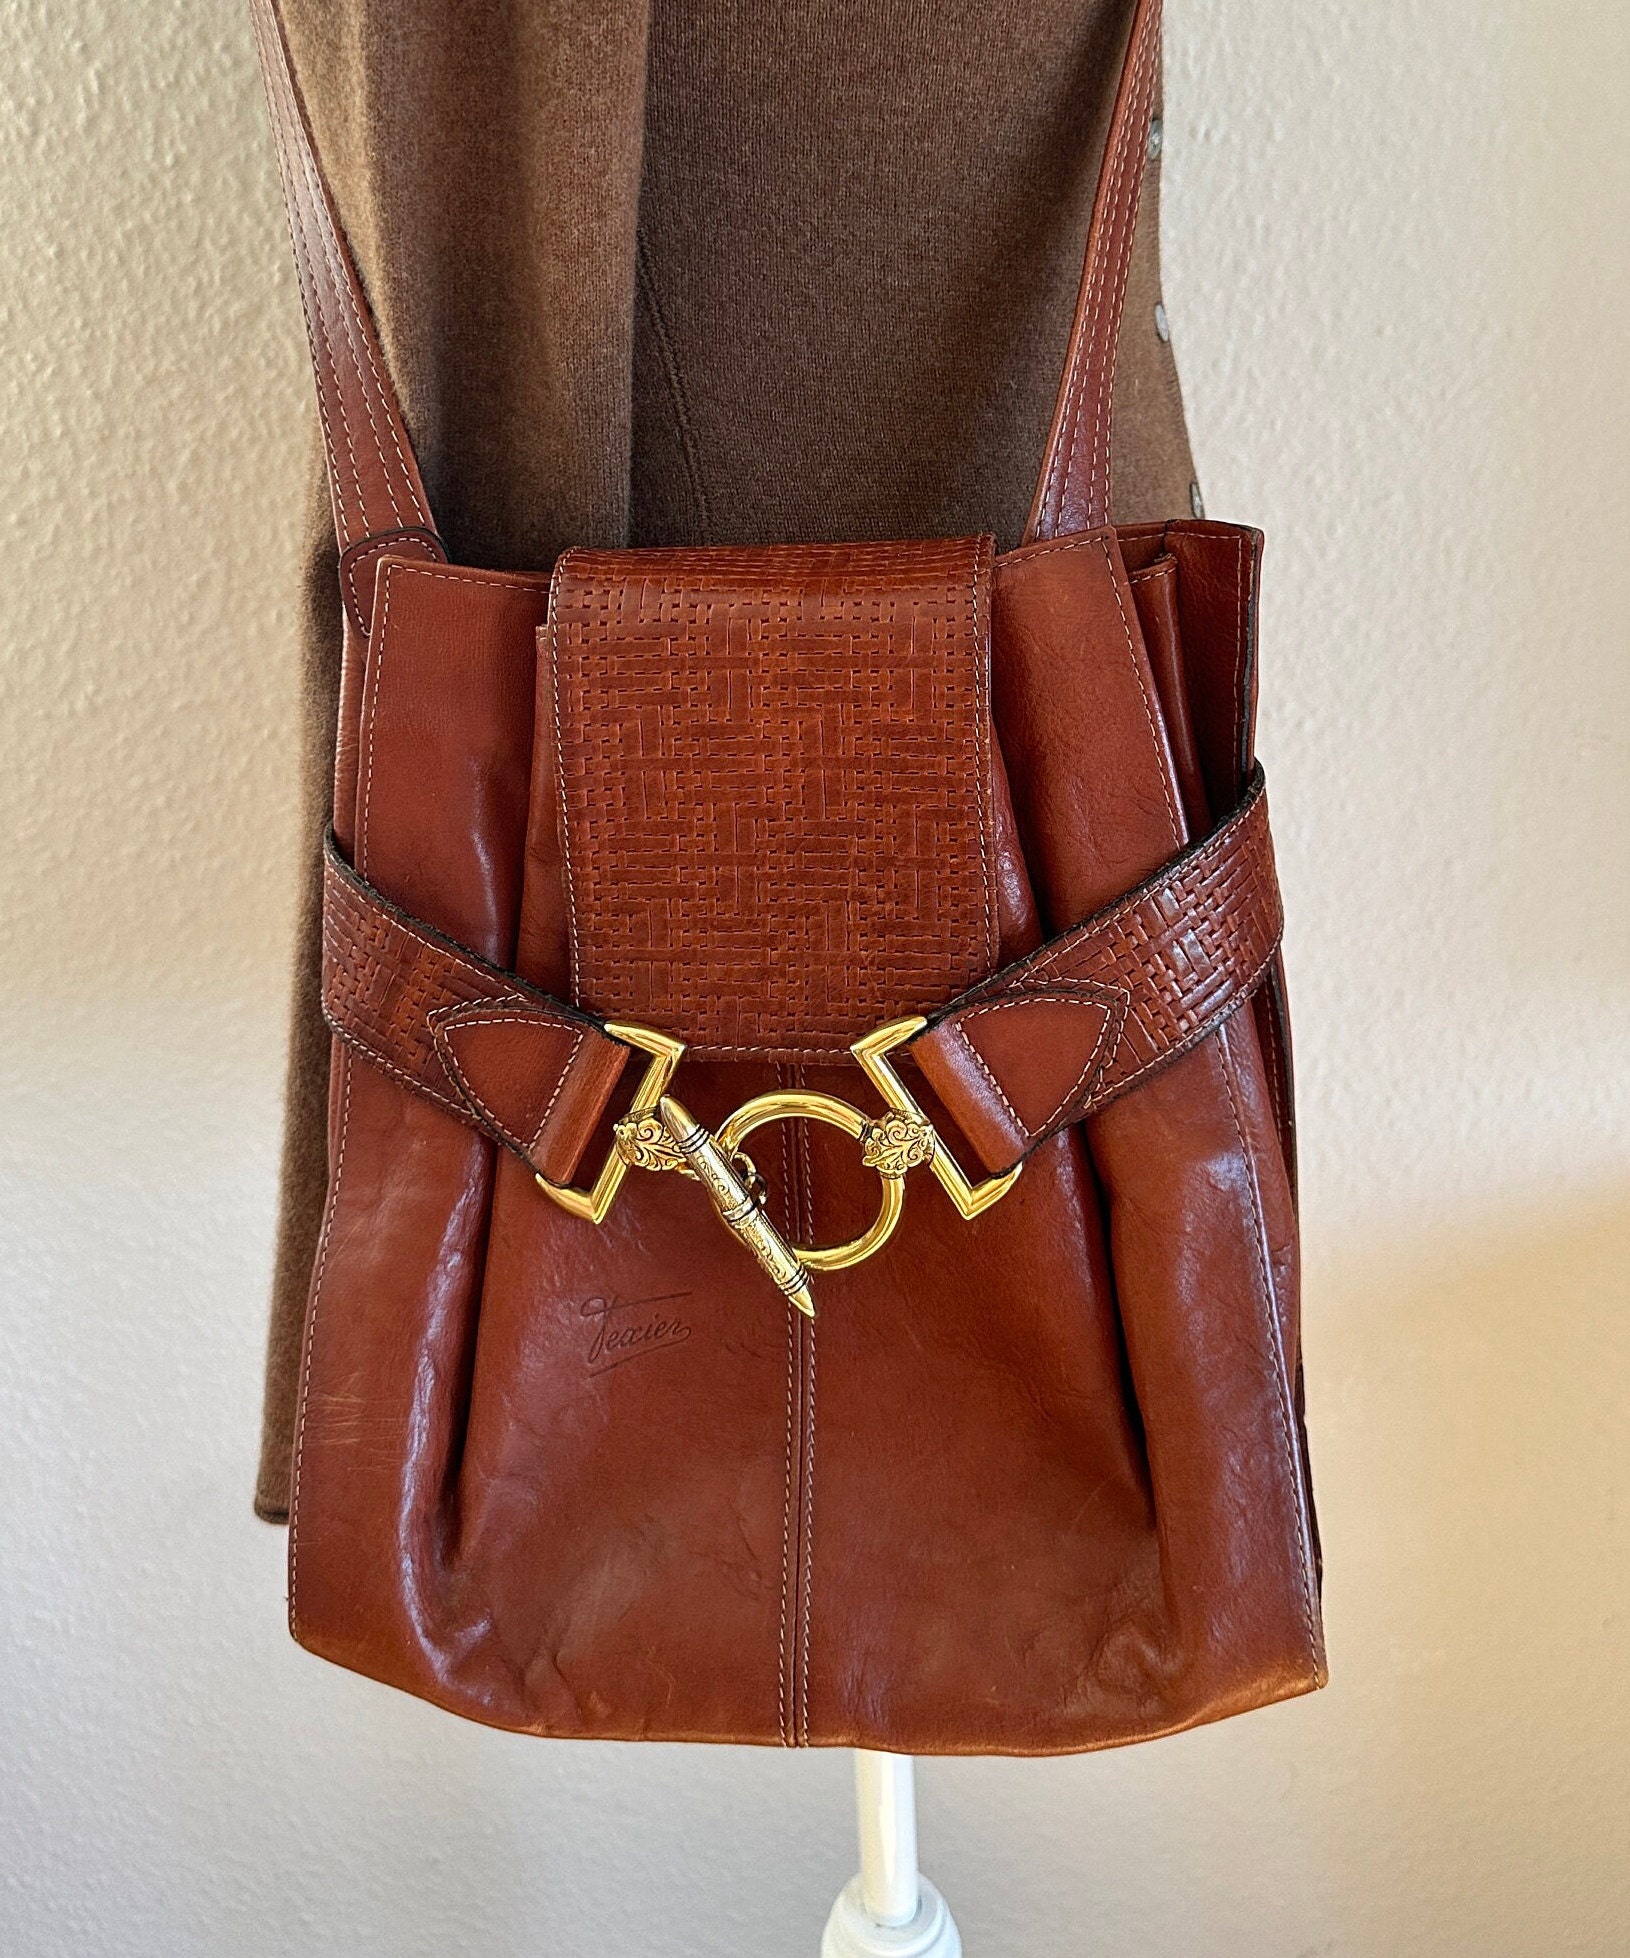 Vintage leather Bag made in France, Obilis Paris